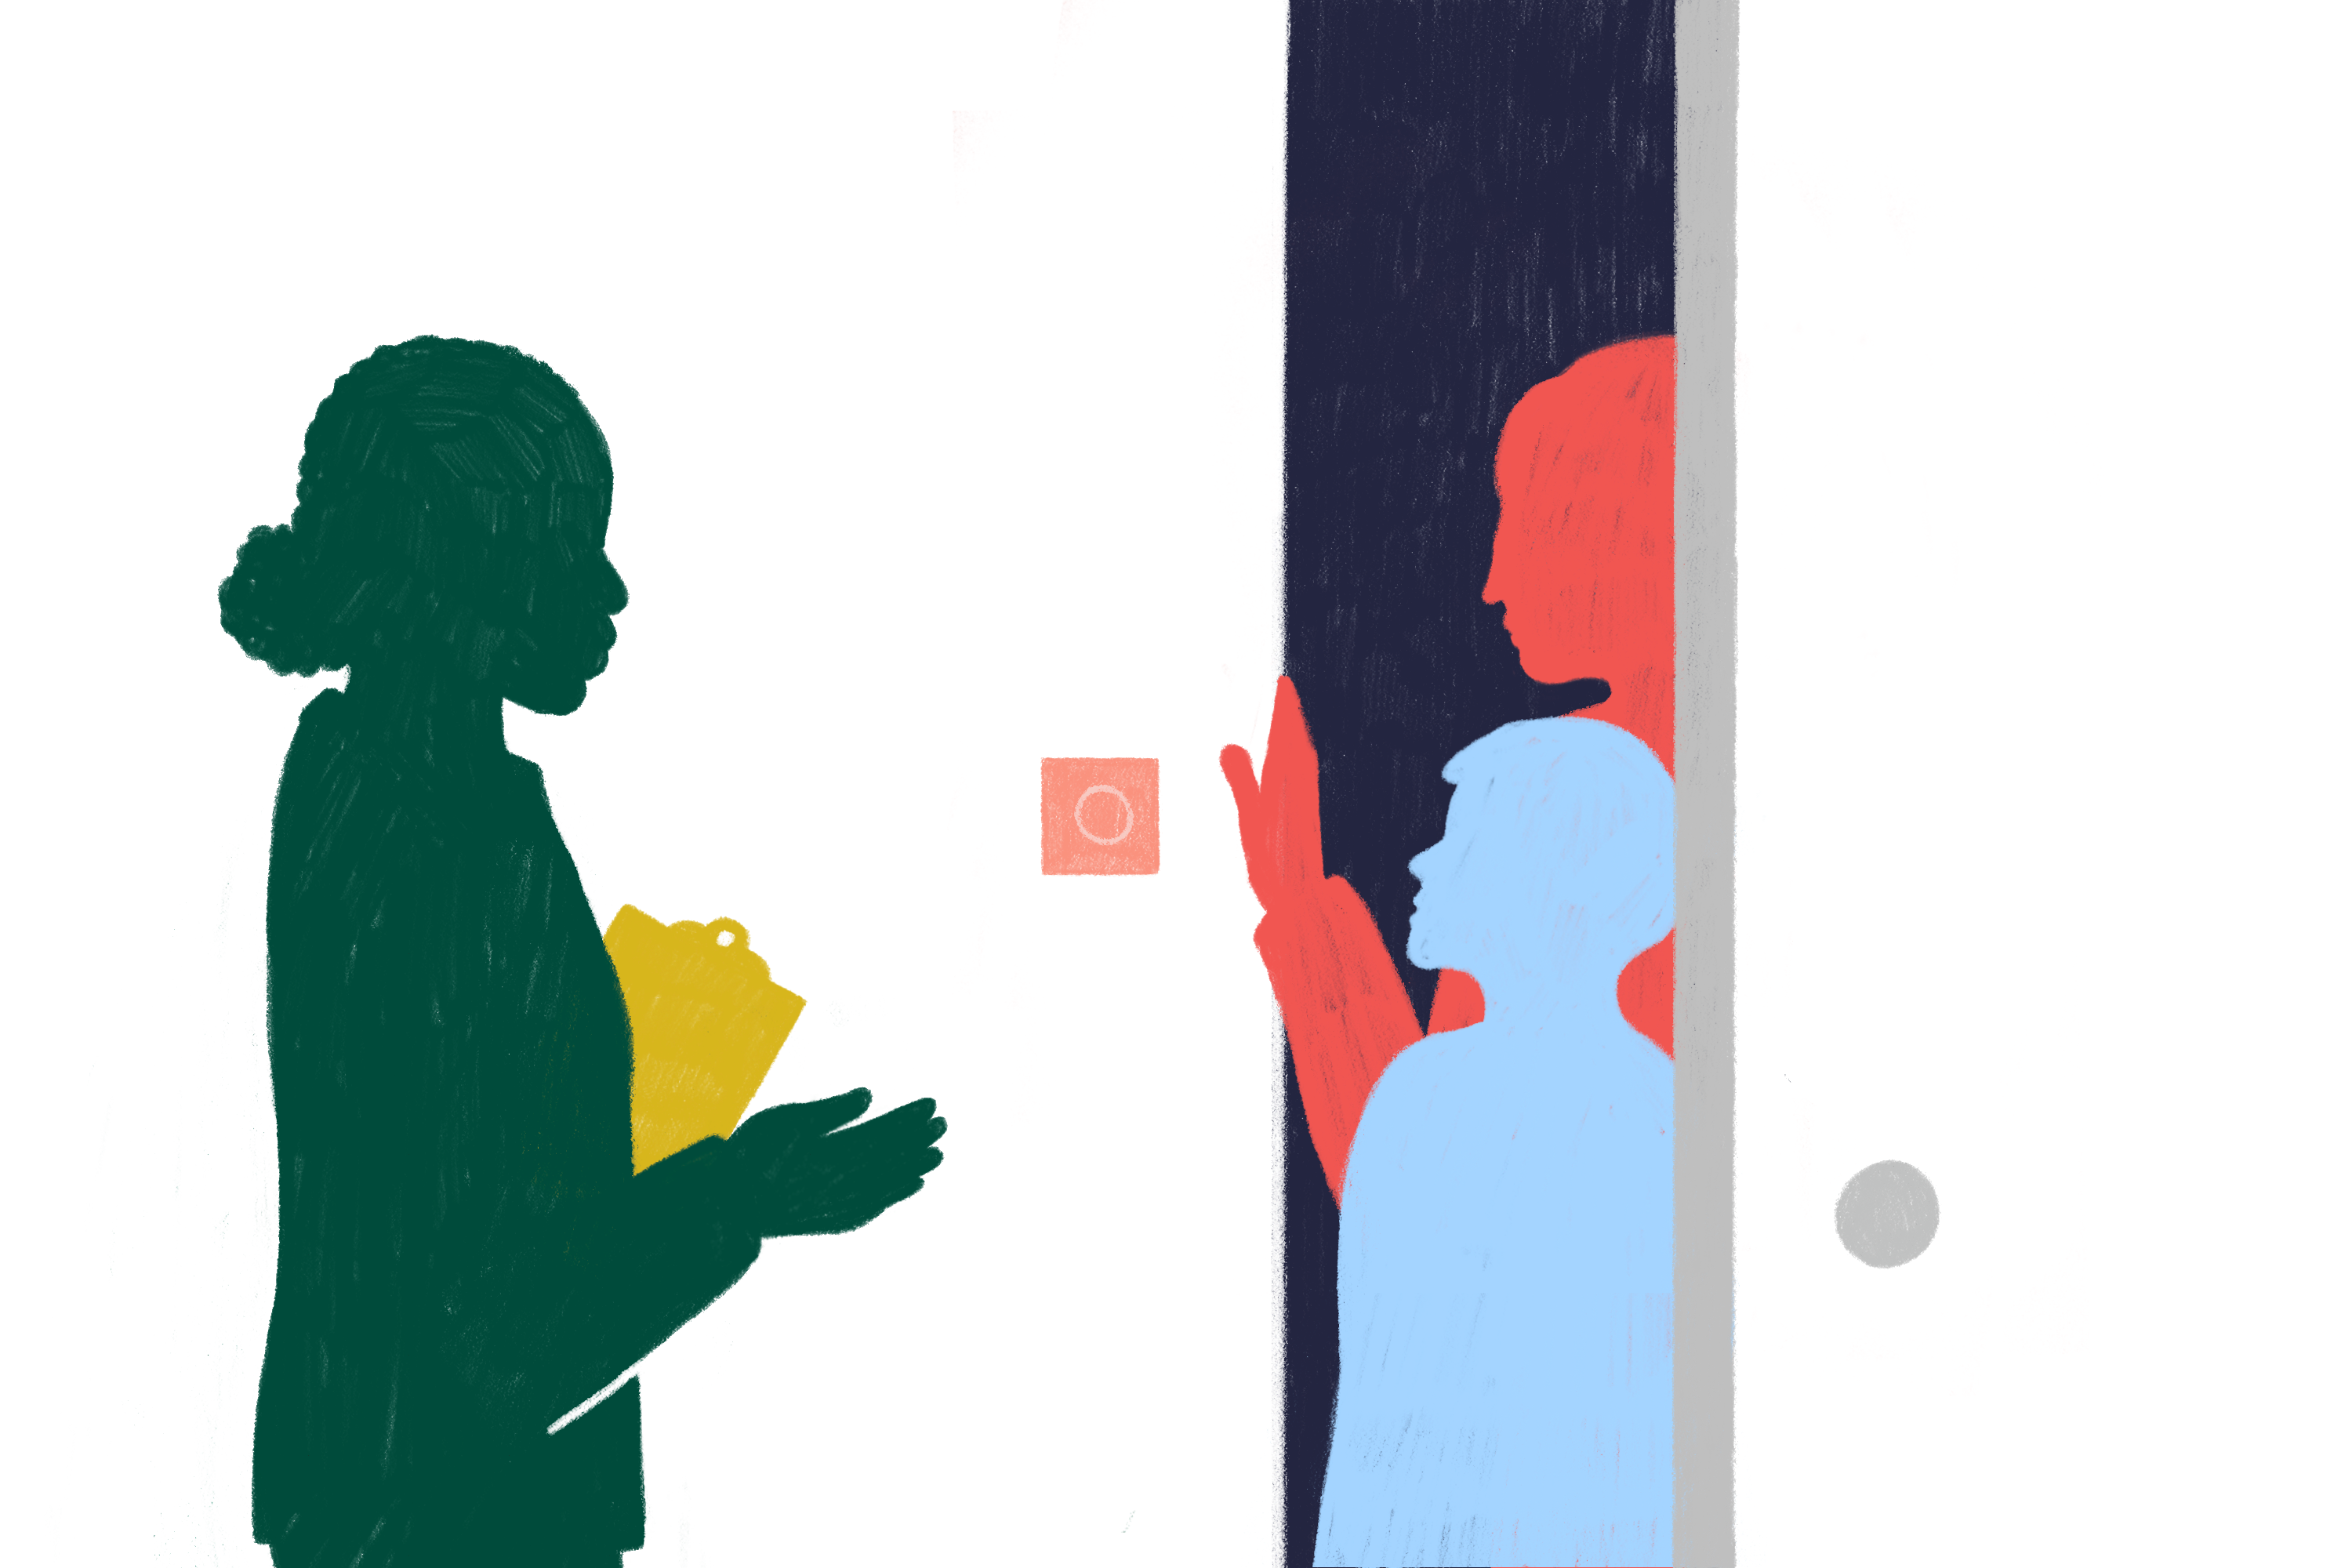 Grafik einer Person vor einer Wohnungstüre, die mit zwei Personen an der offenen Wohnungstür spricht.